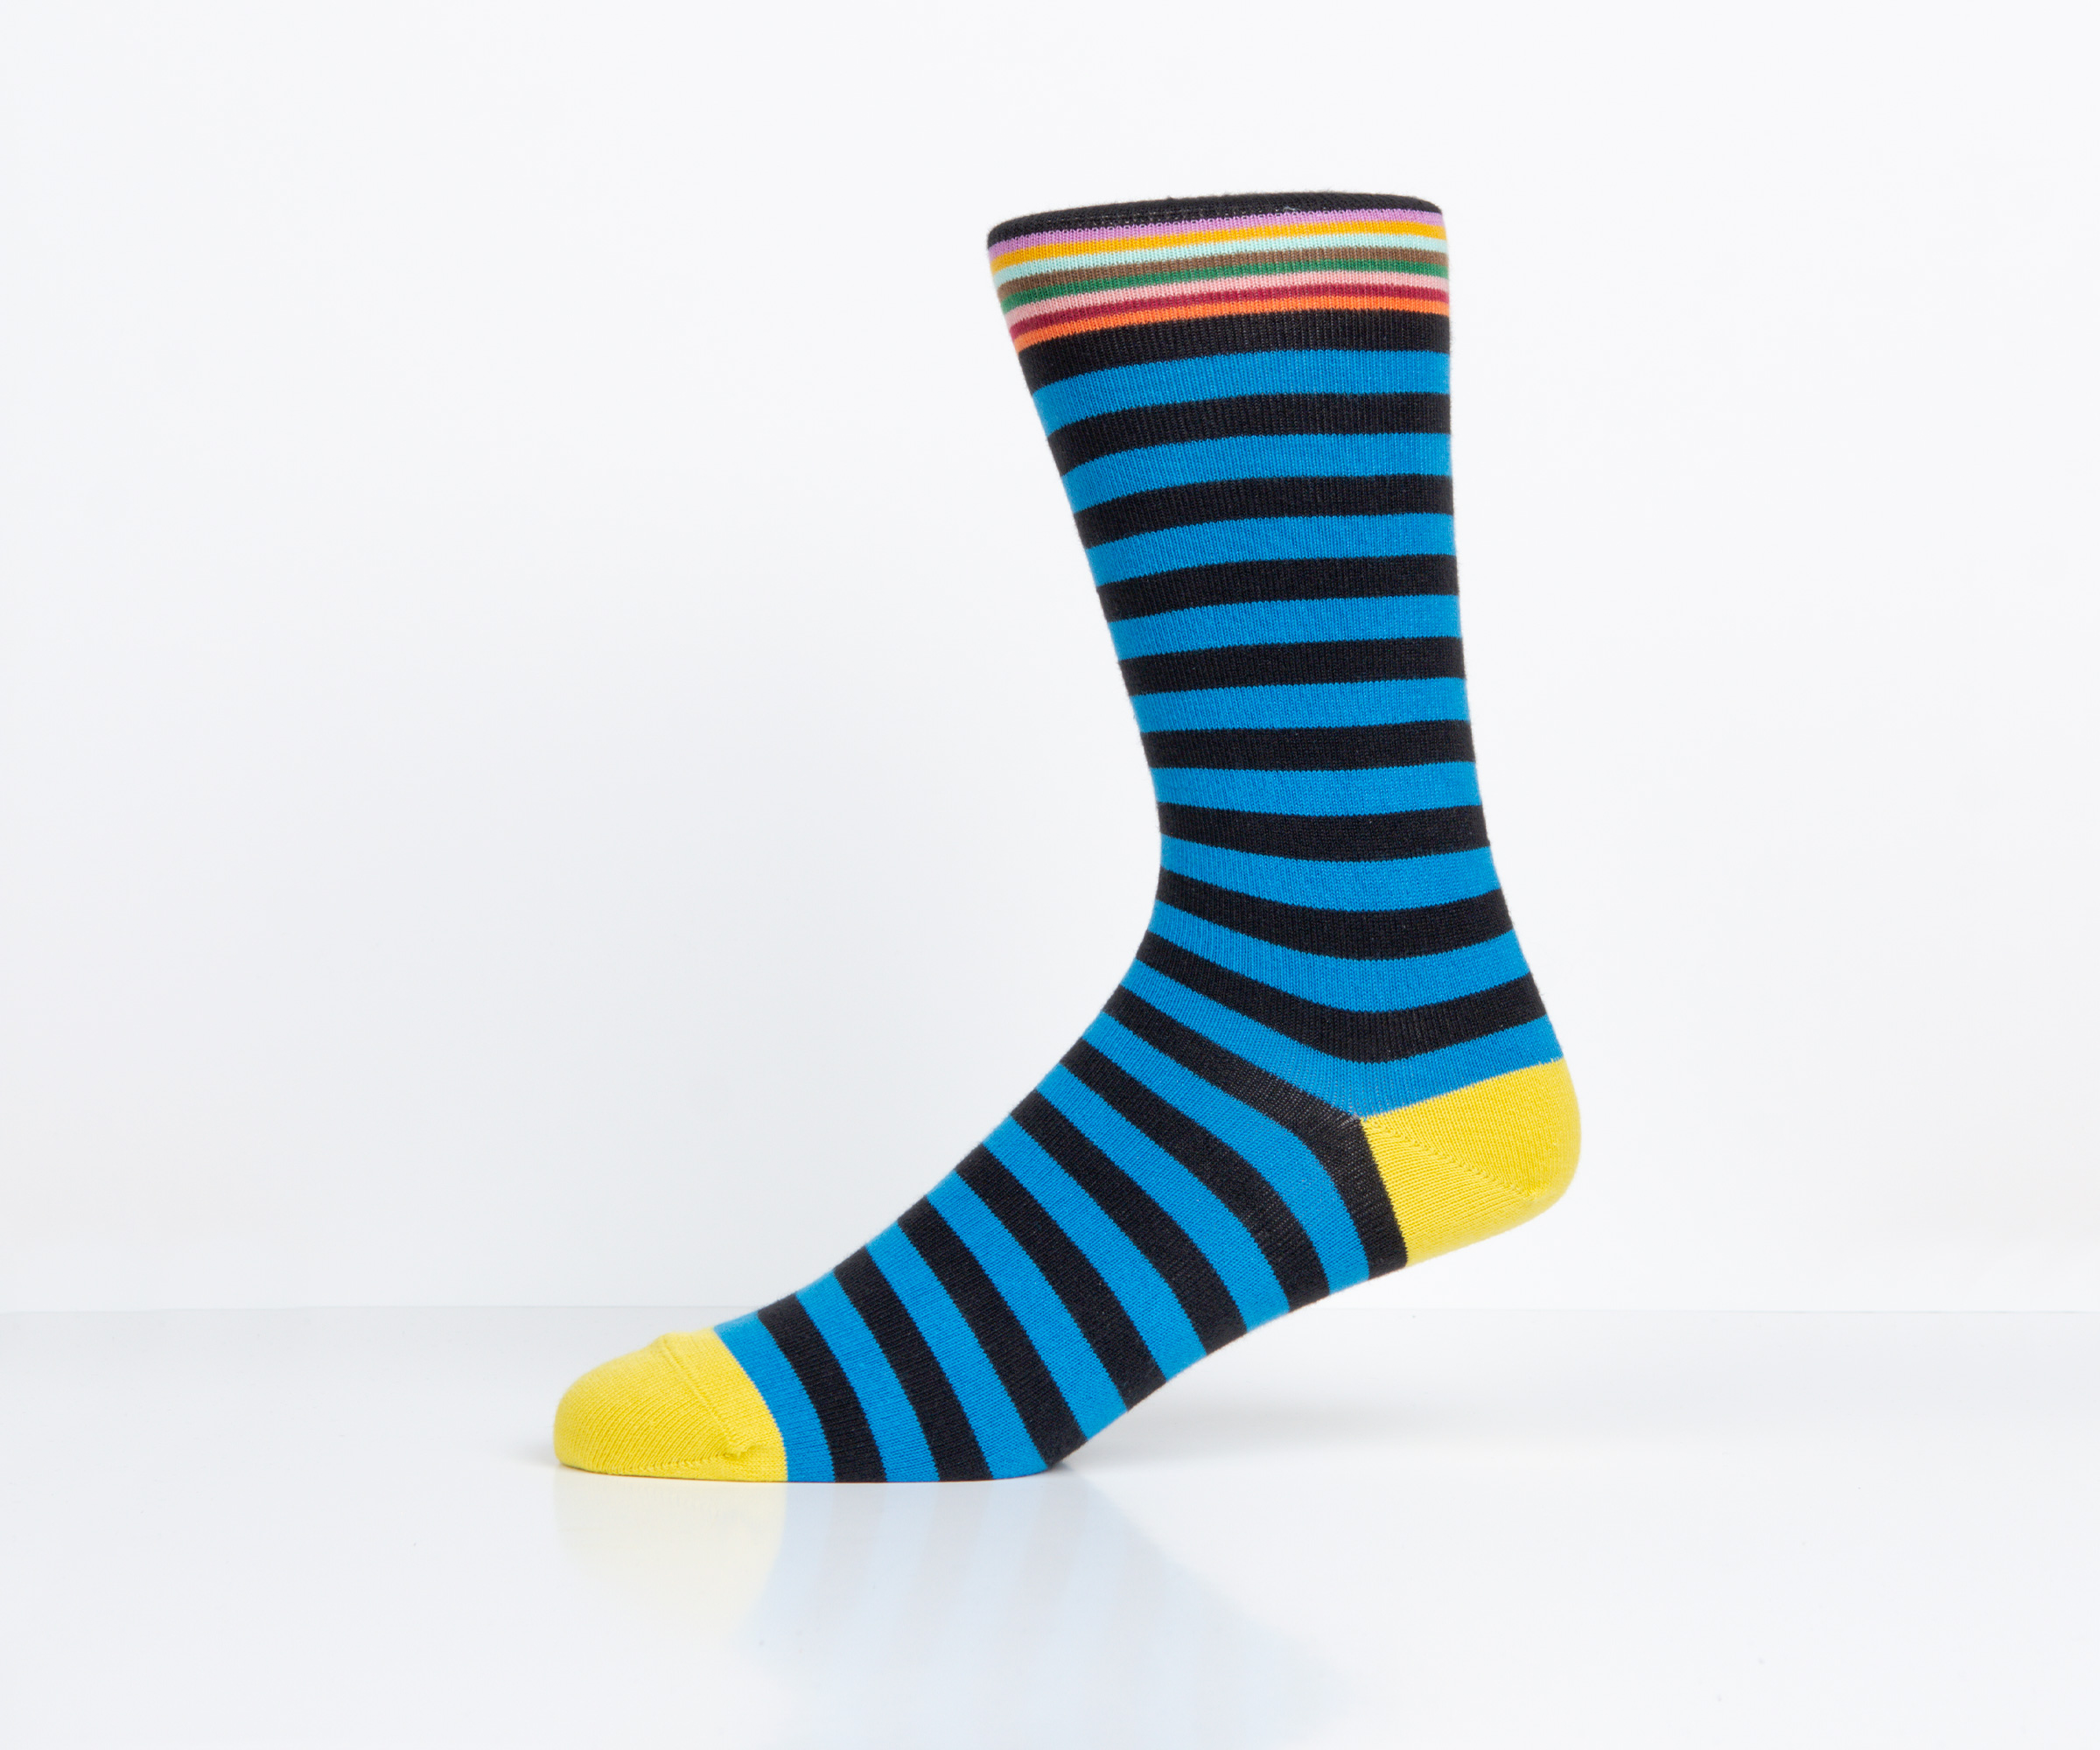 Paul Smith 'Two Stripe' Sock Black/Blue